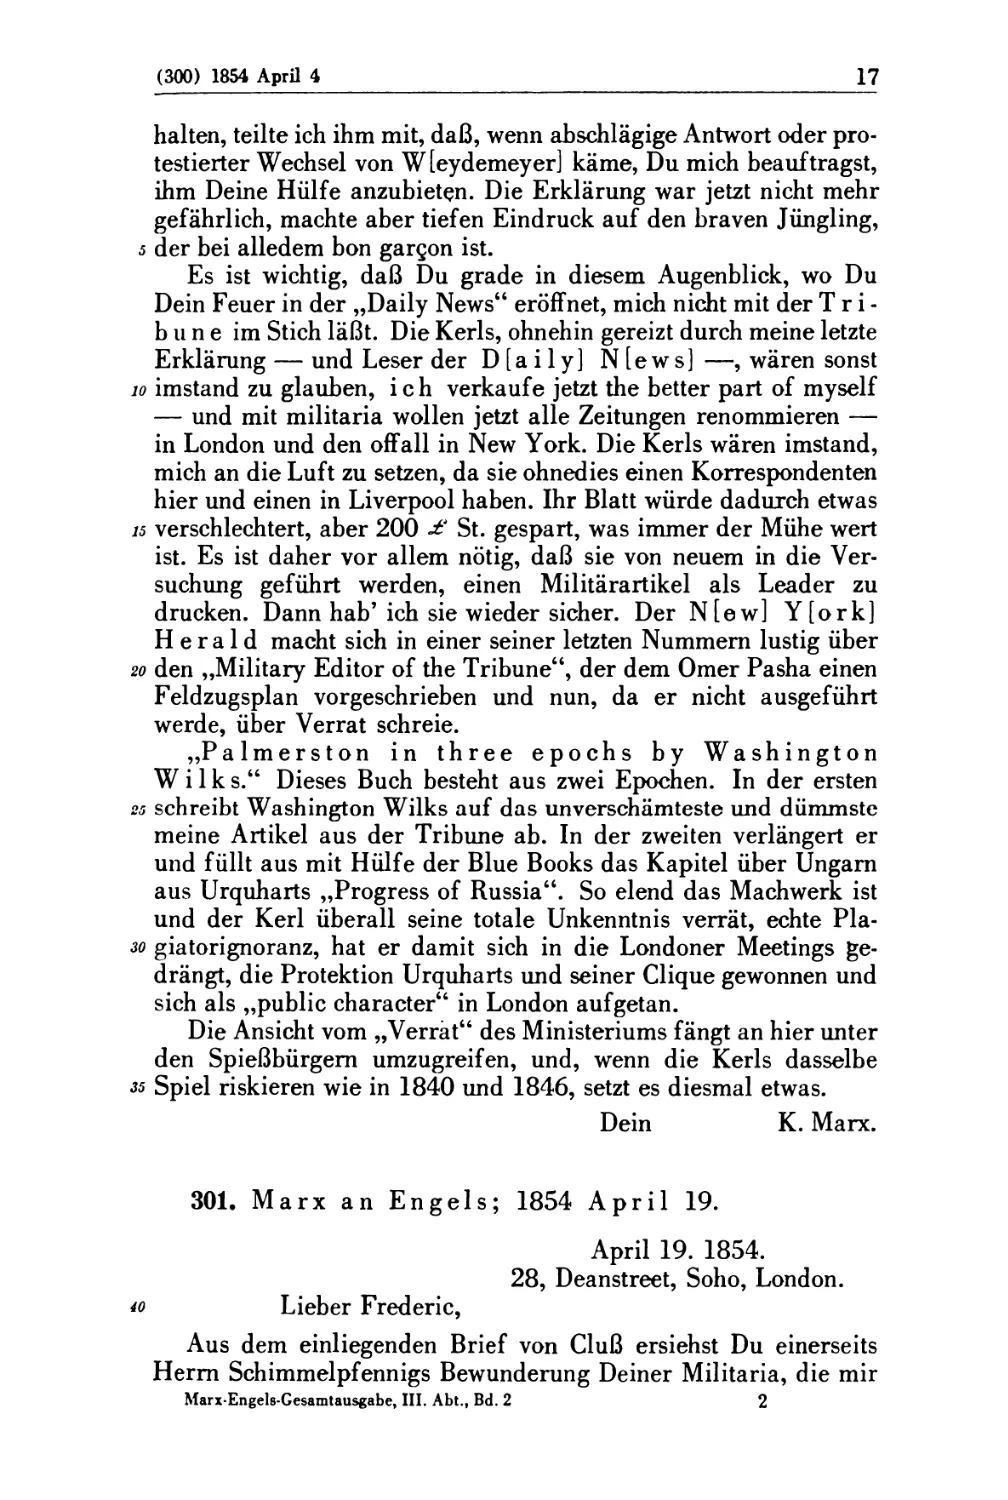 301. Marx an Engels; 1854 April 19